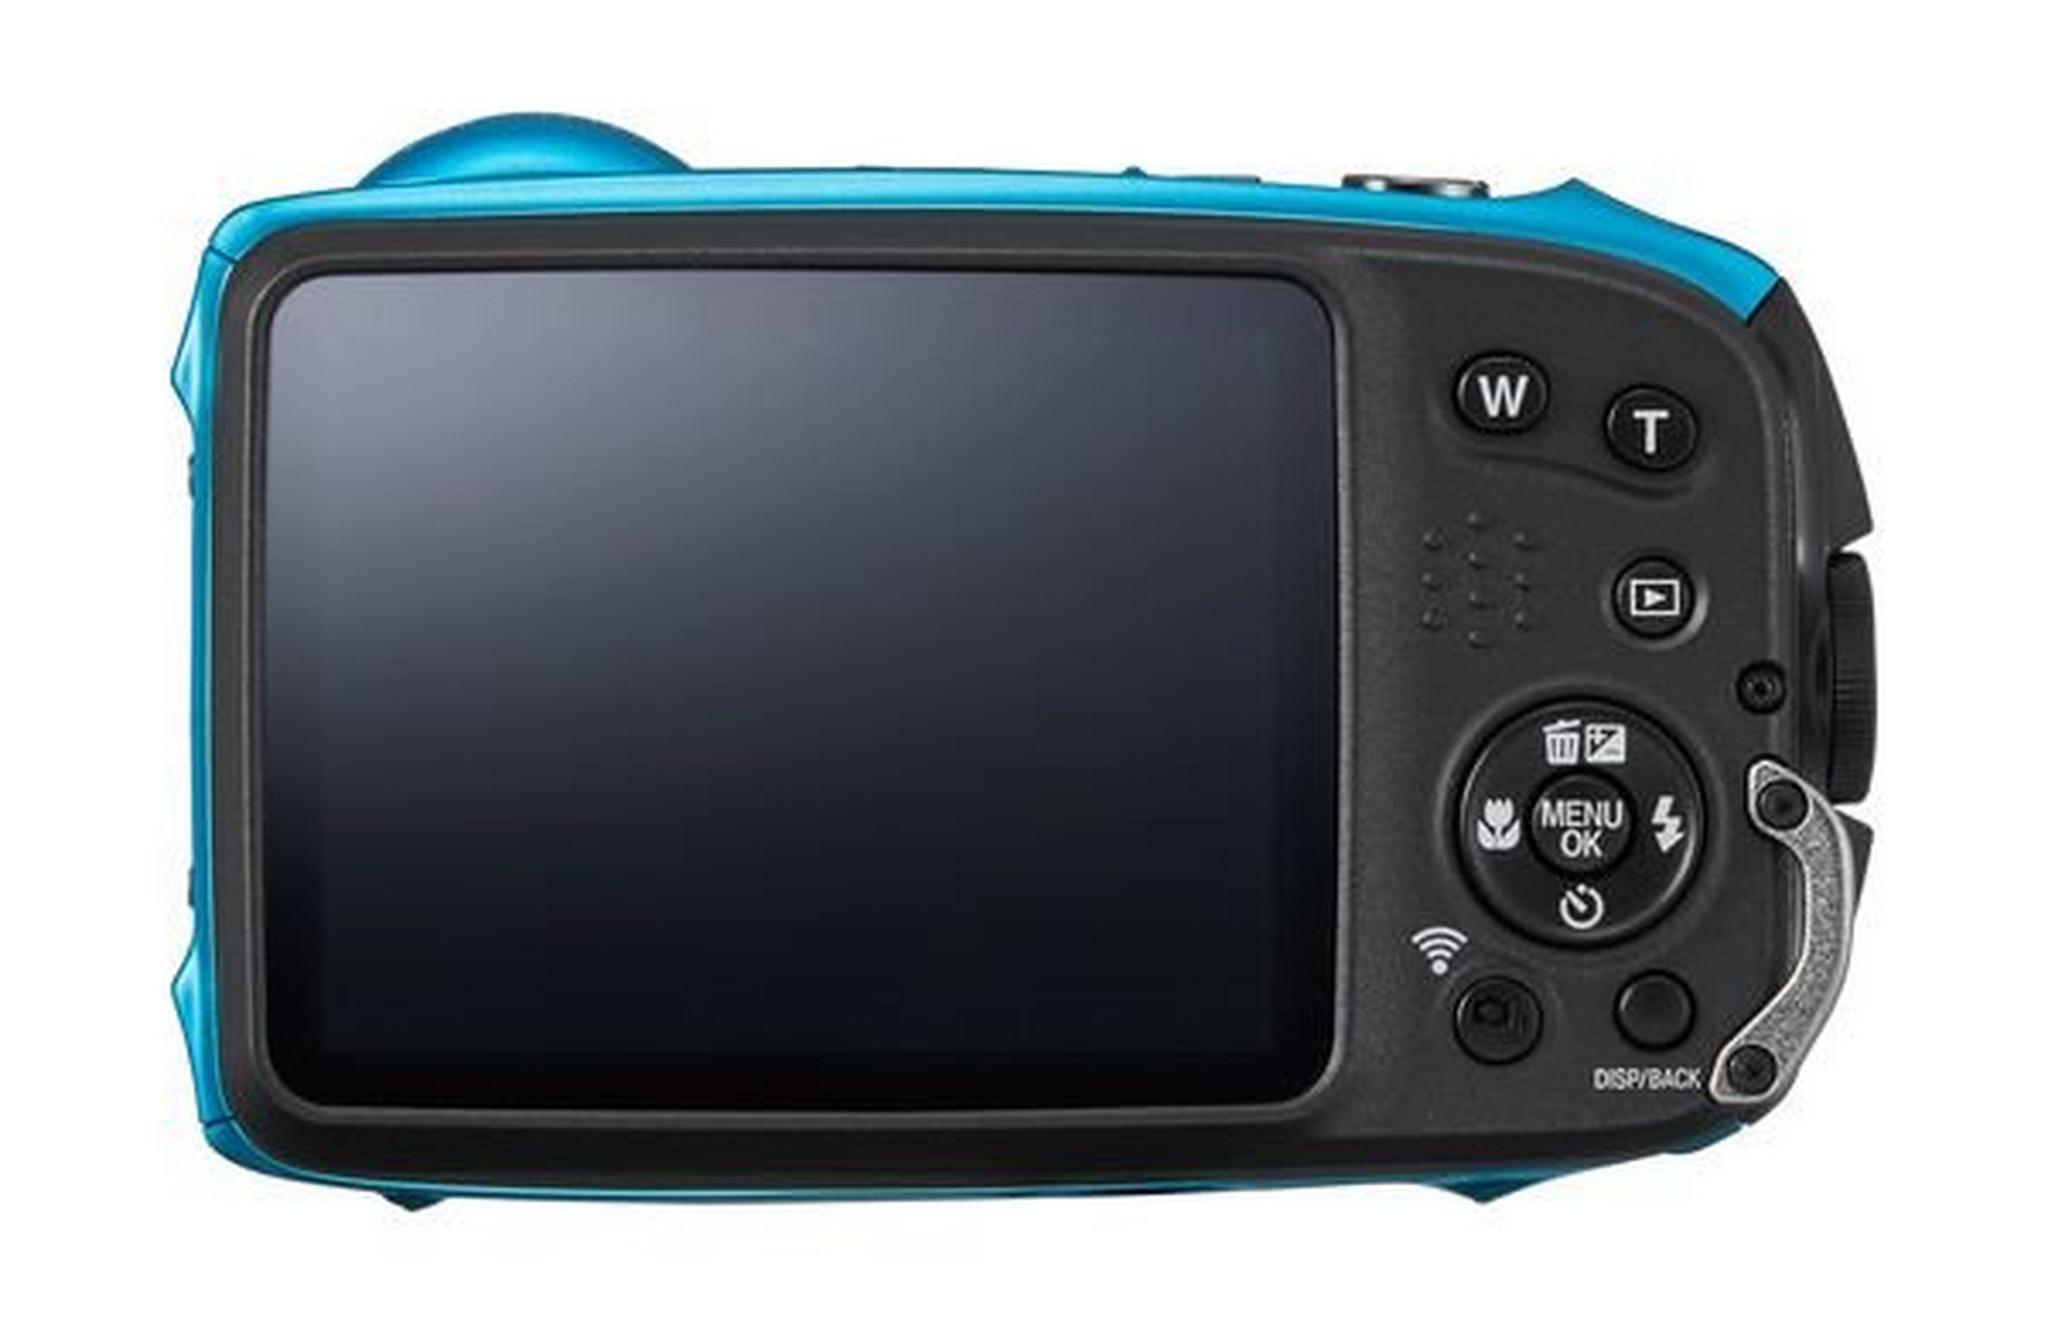 الكاميرا الرقمية فوجي فيلم إكس بي١٢٠ فاين بكس بدقة ١٦,٤ ميجابكسل - أزرق سماوي